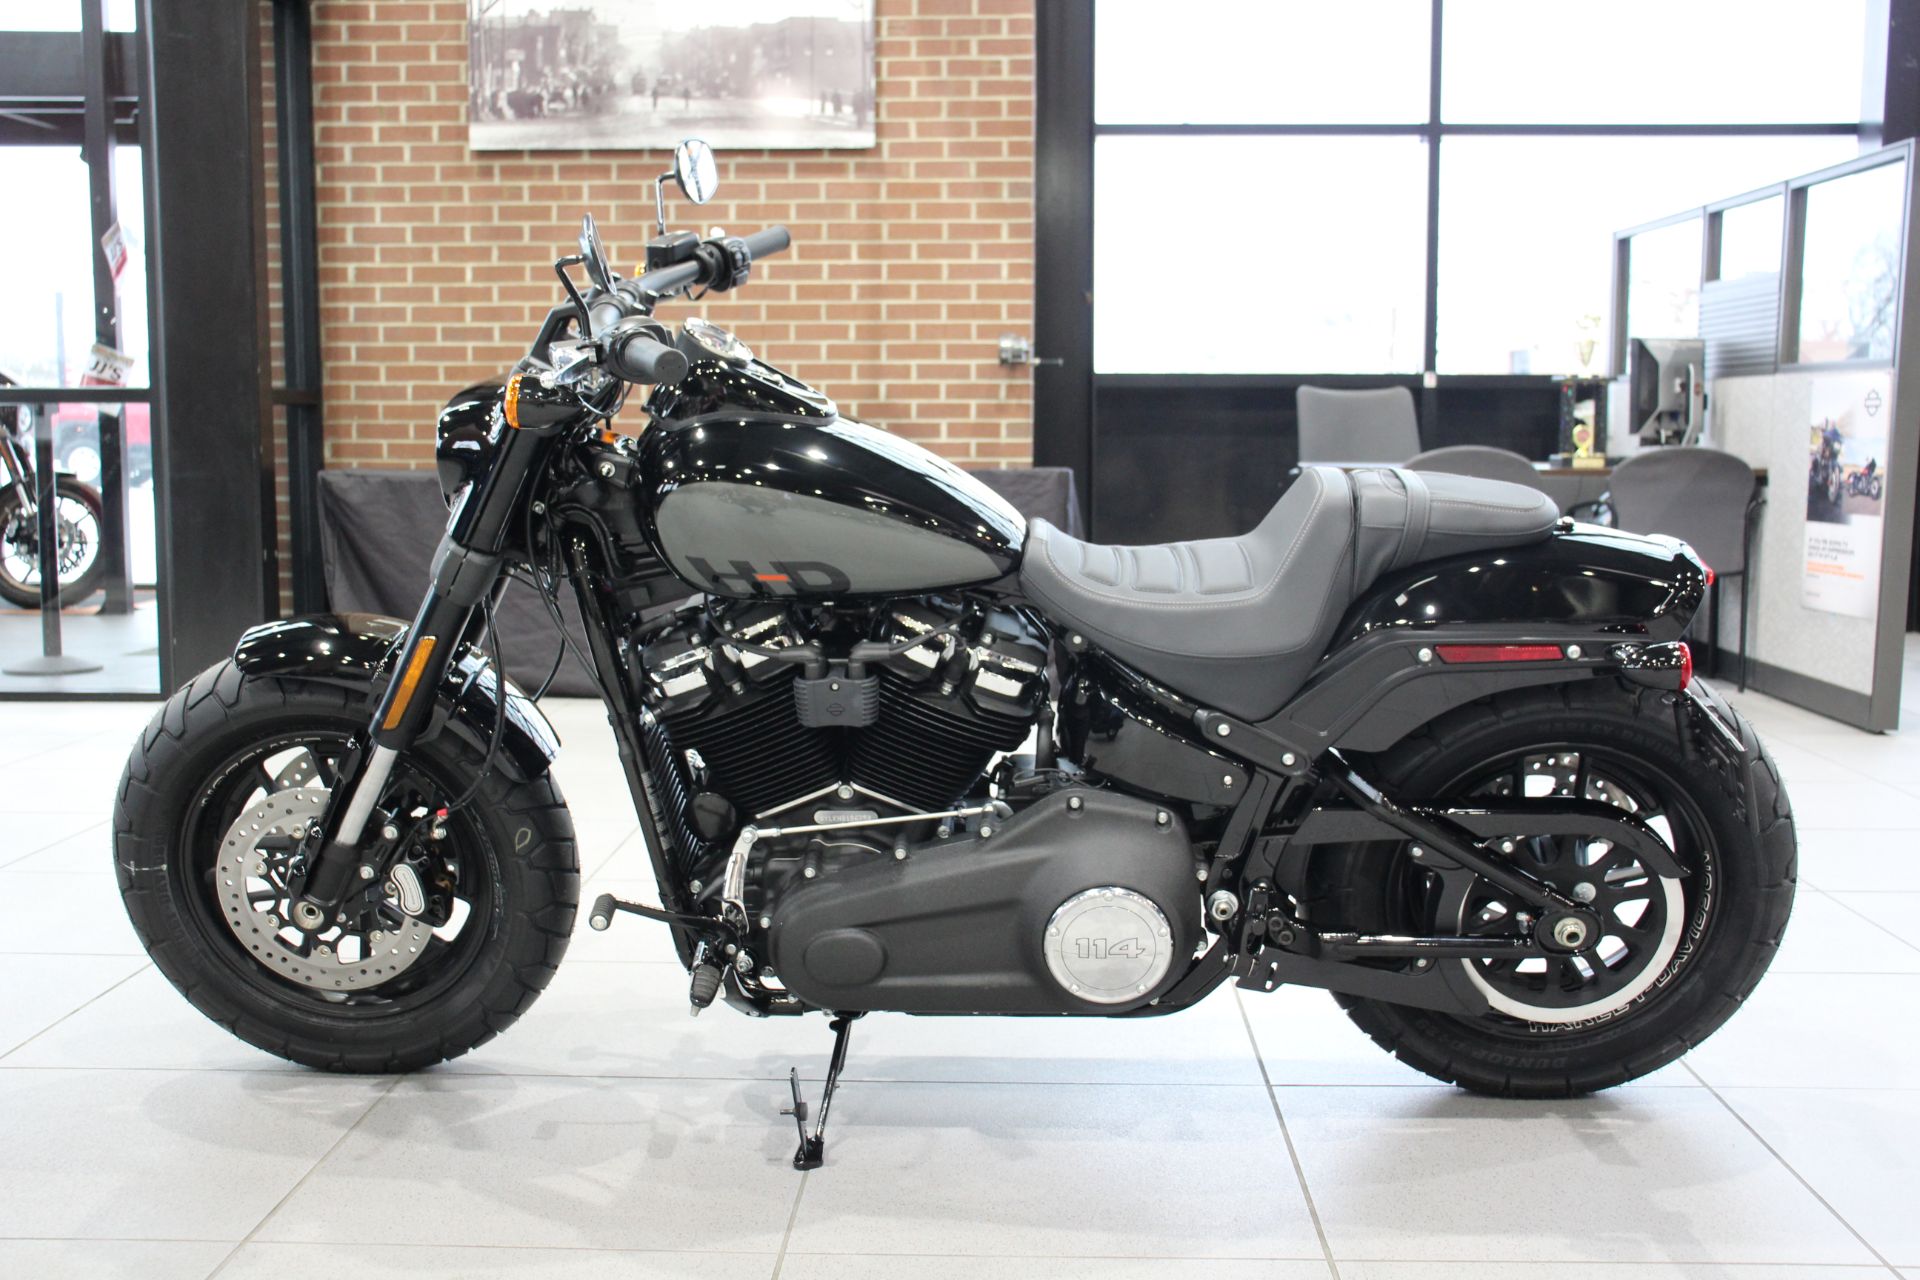 2023 Harley-Davidson Fat Bob® 114 in Flint, Michigan - Photo 5